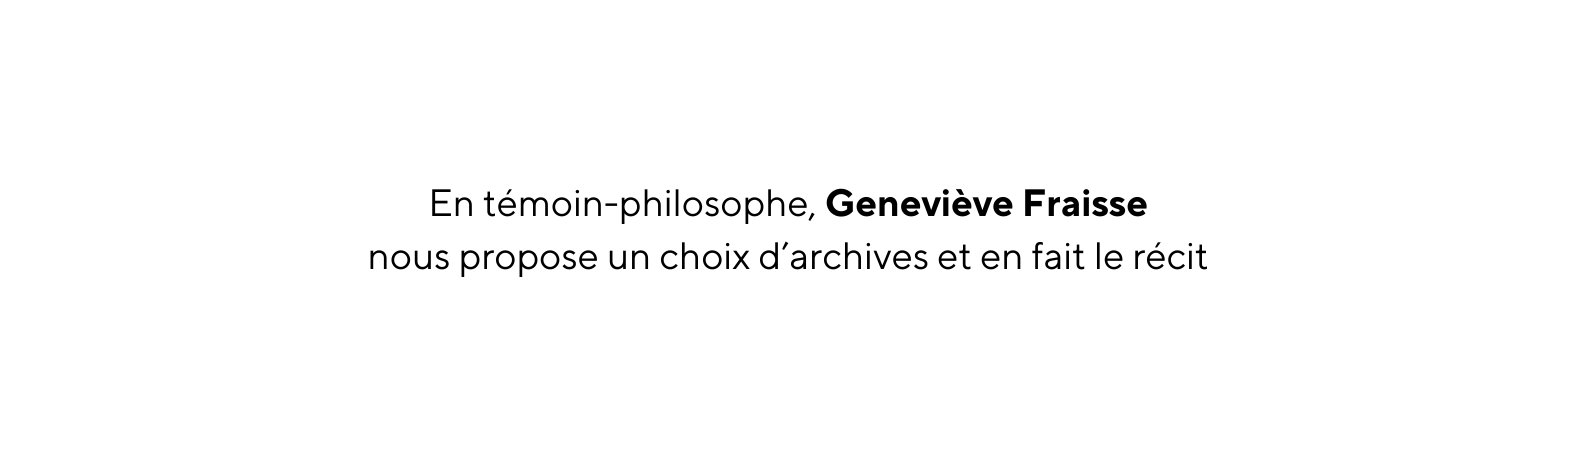 En témoin philosophe Geneviève Fraisse nous propose un choix d archives et en fait le récit